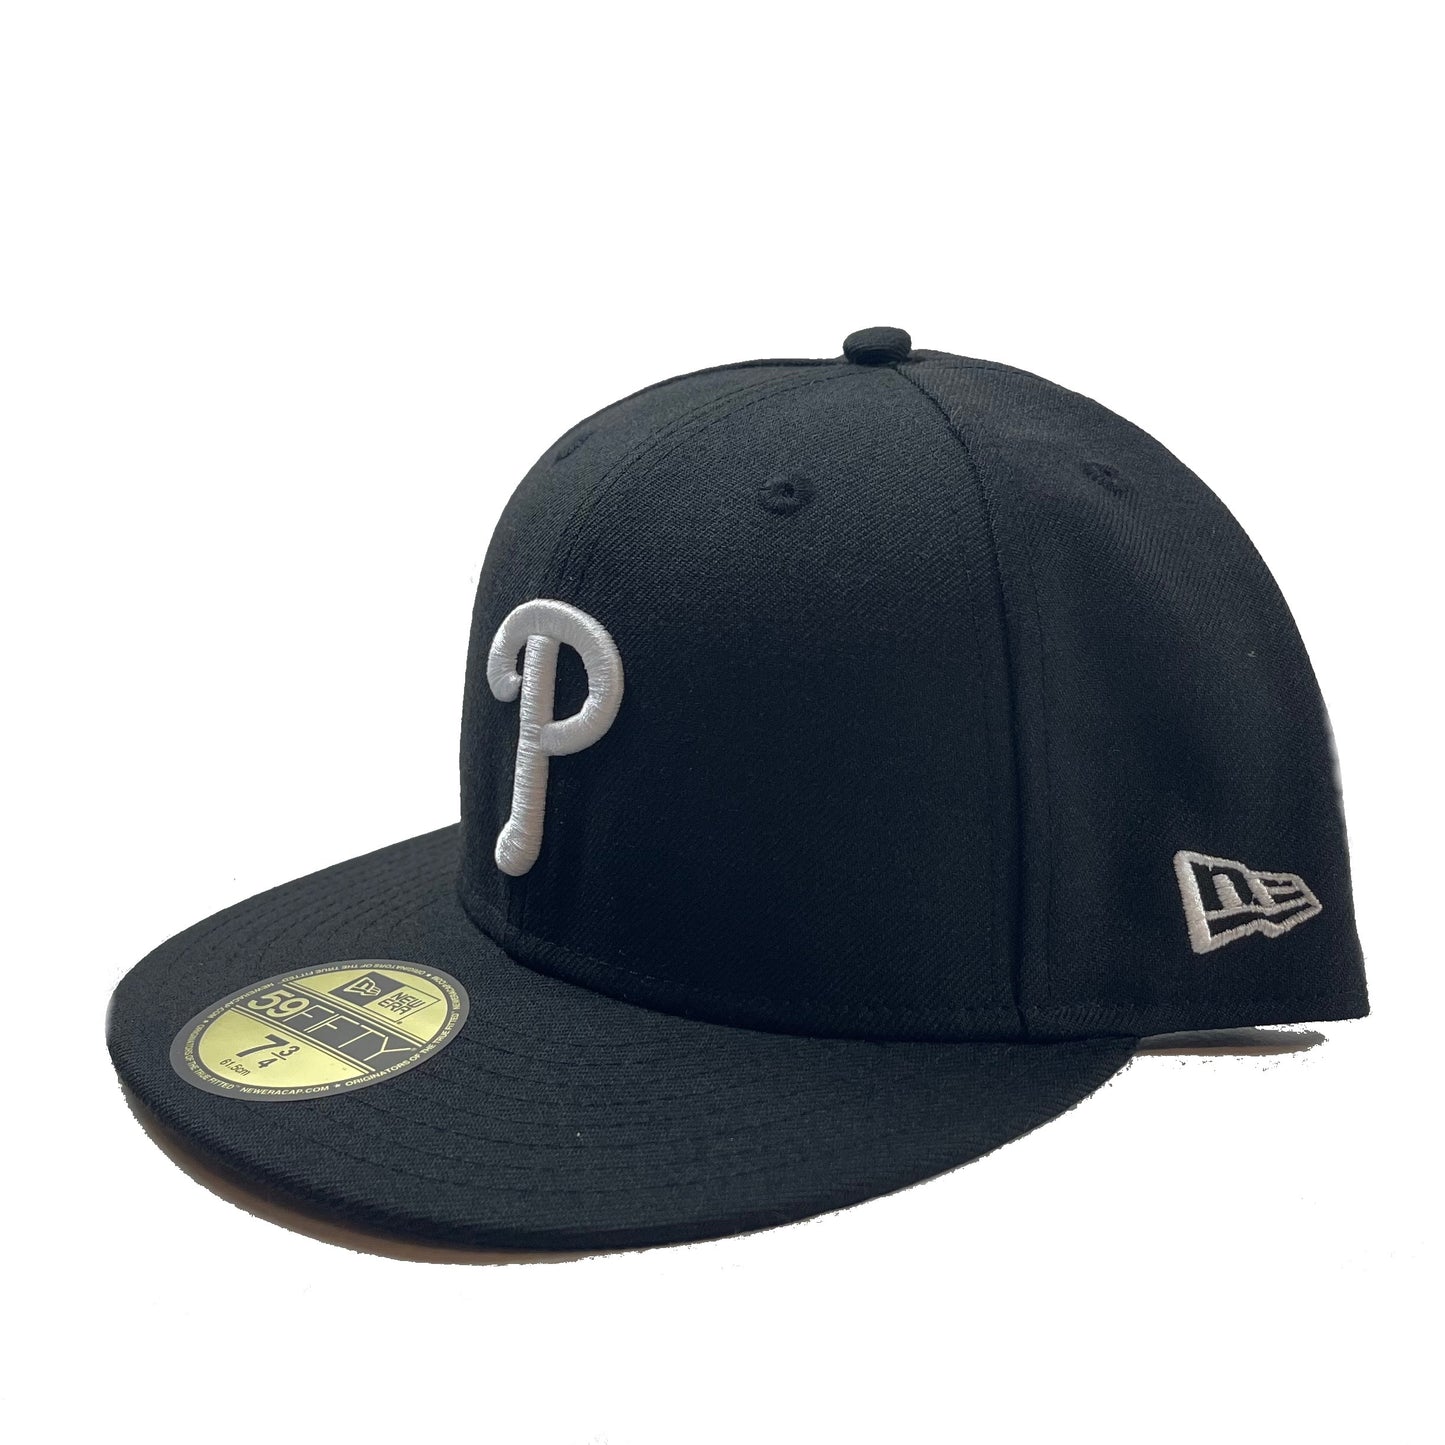 Philadelphia Phillies (Black) Fitted/Snapback